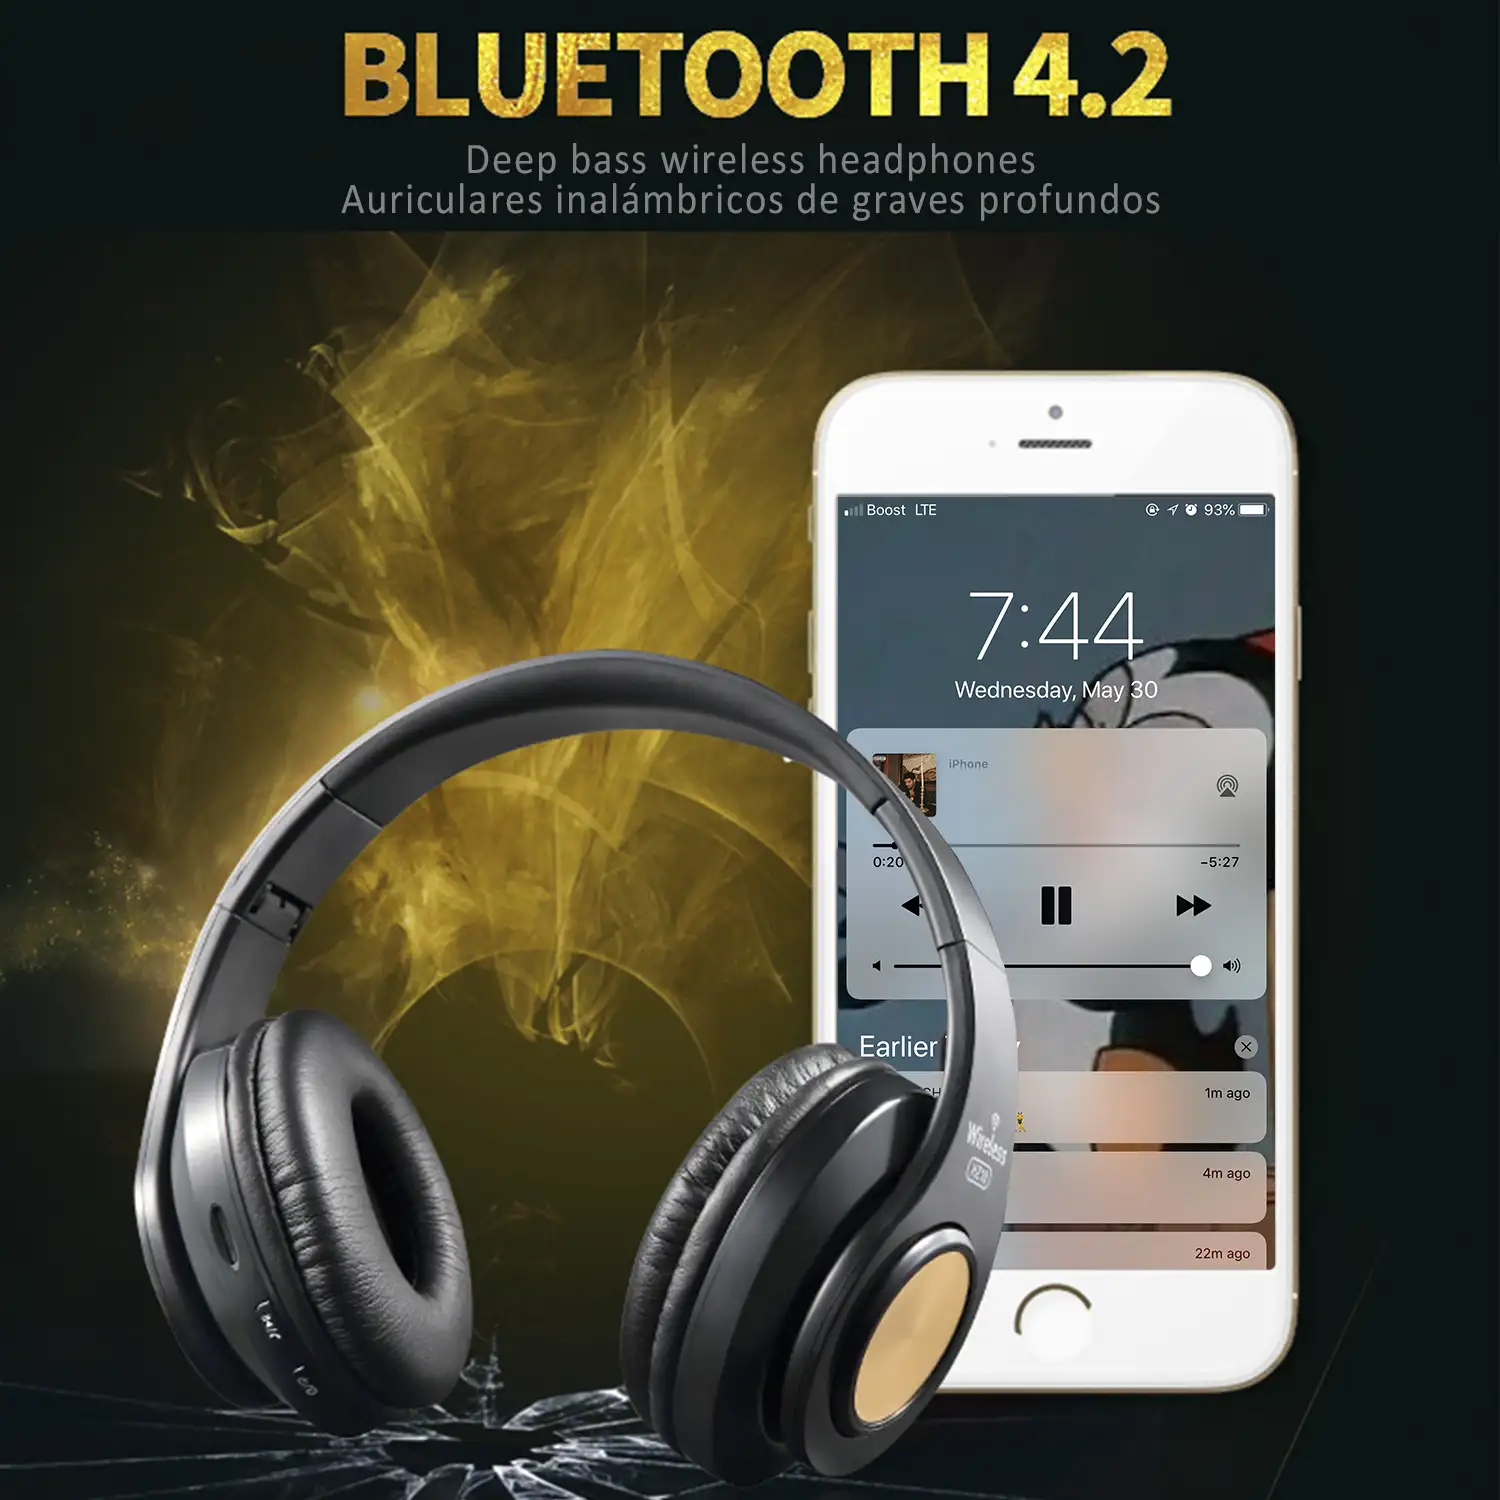 Cascos HZ-10 Bluetooth 4.2 con función manos libres, radio FM y puerto para tarjetas Micro SD